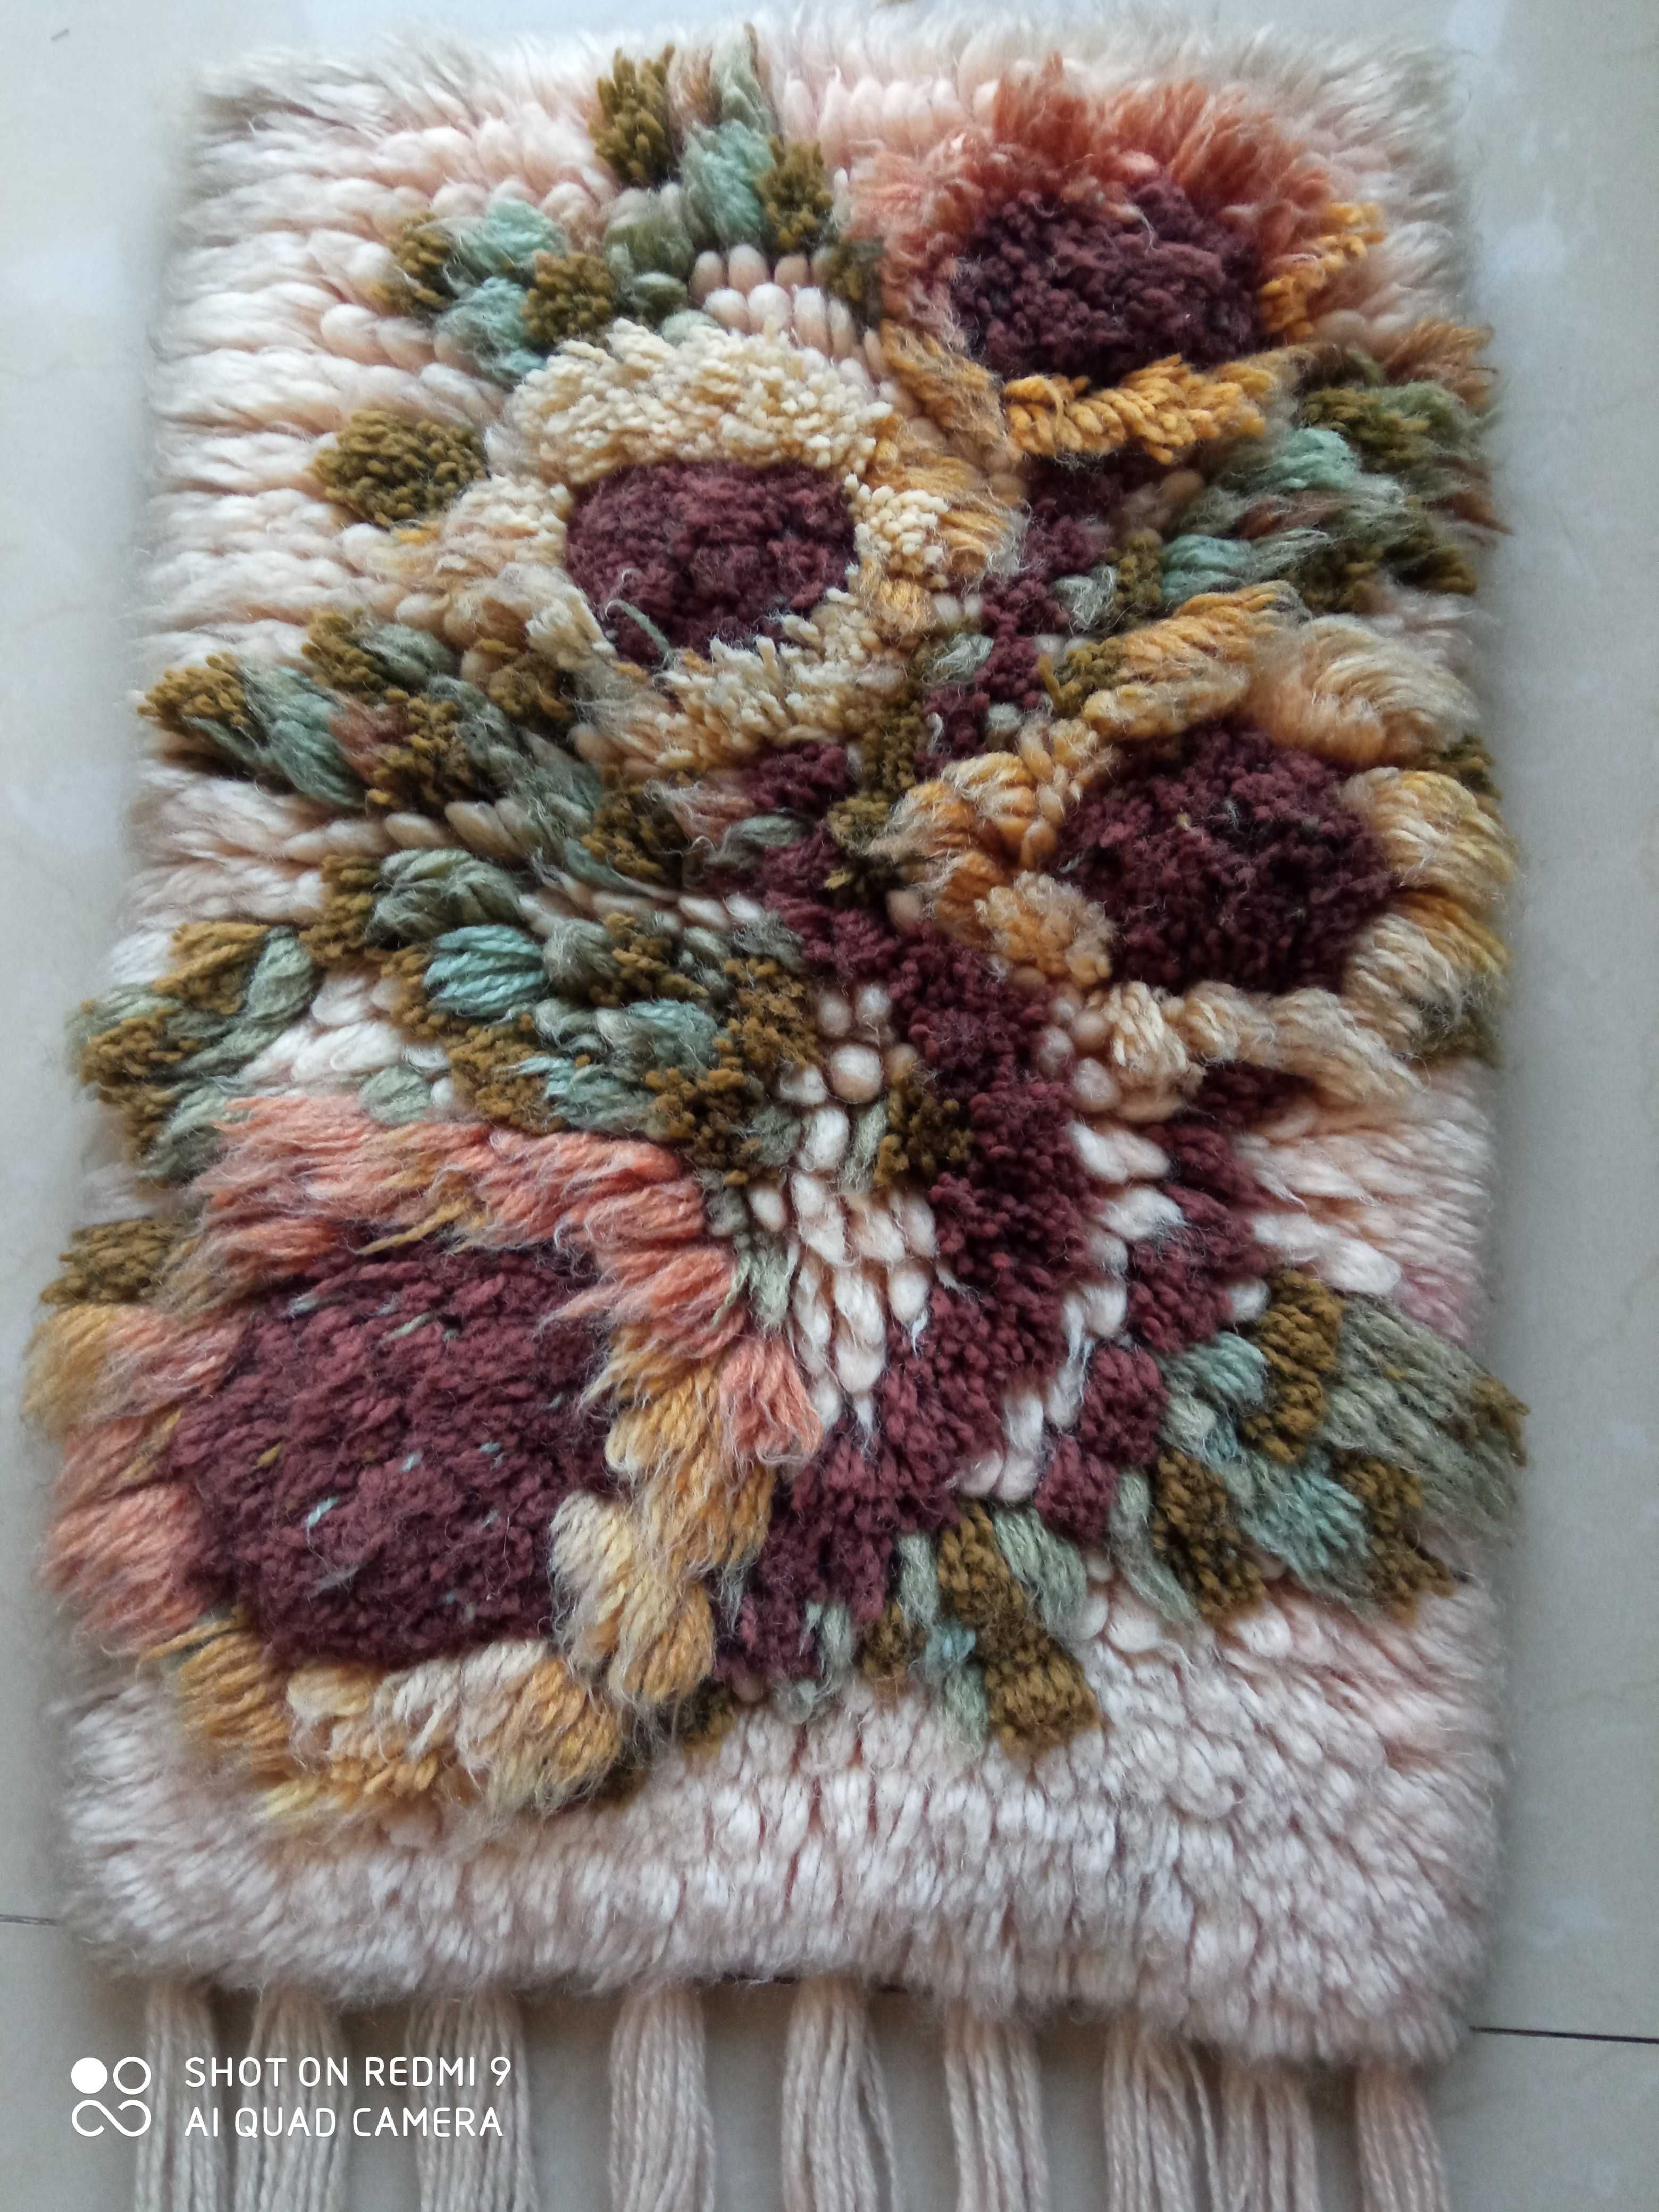 Cepelia PRL kilim makatka kwiaty wełna 33x50 cm + 45cm frędzle